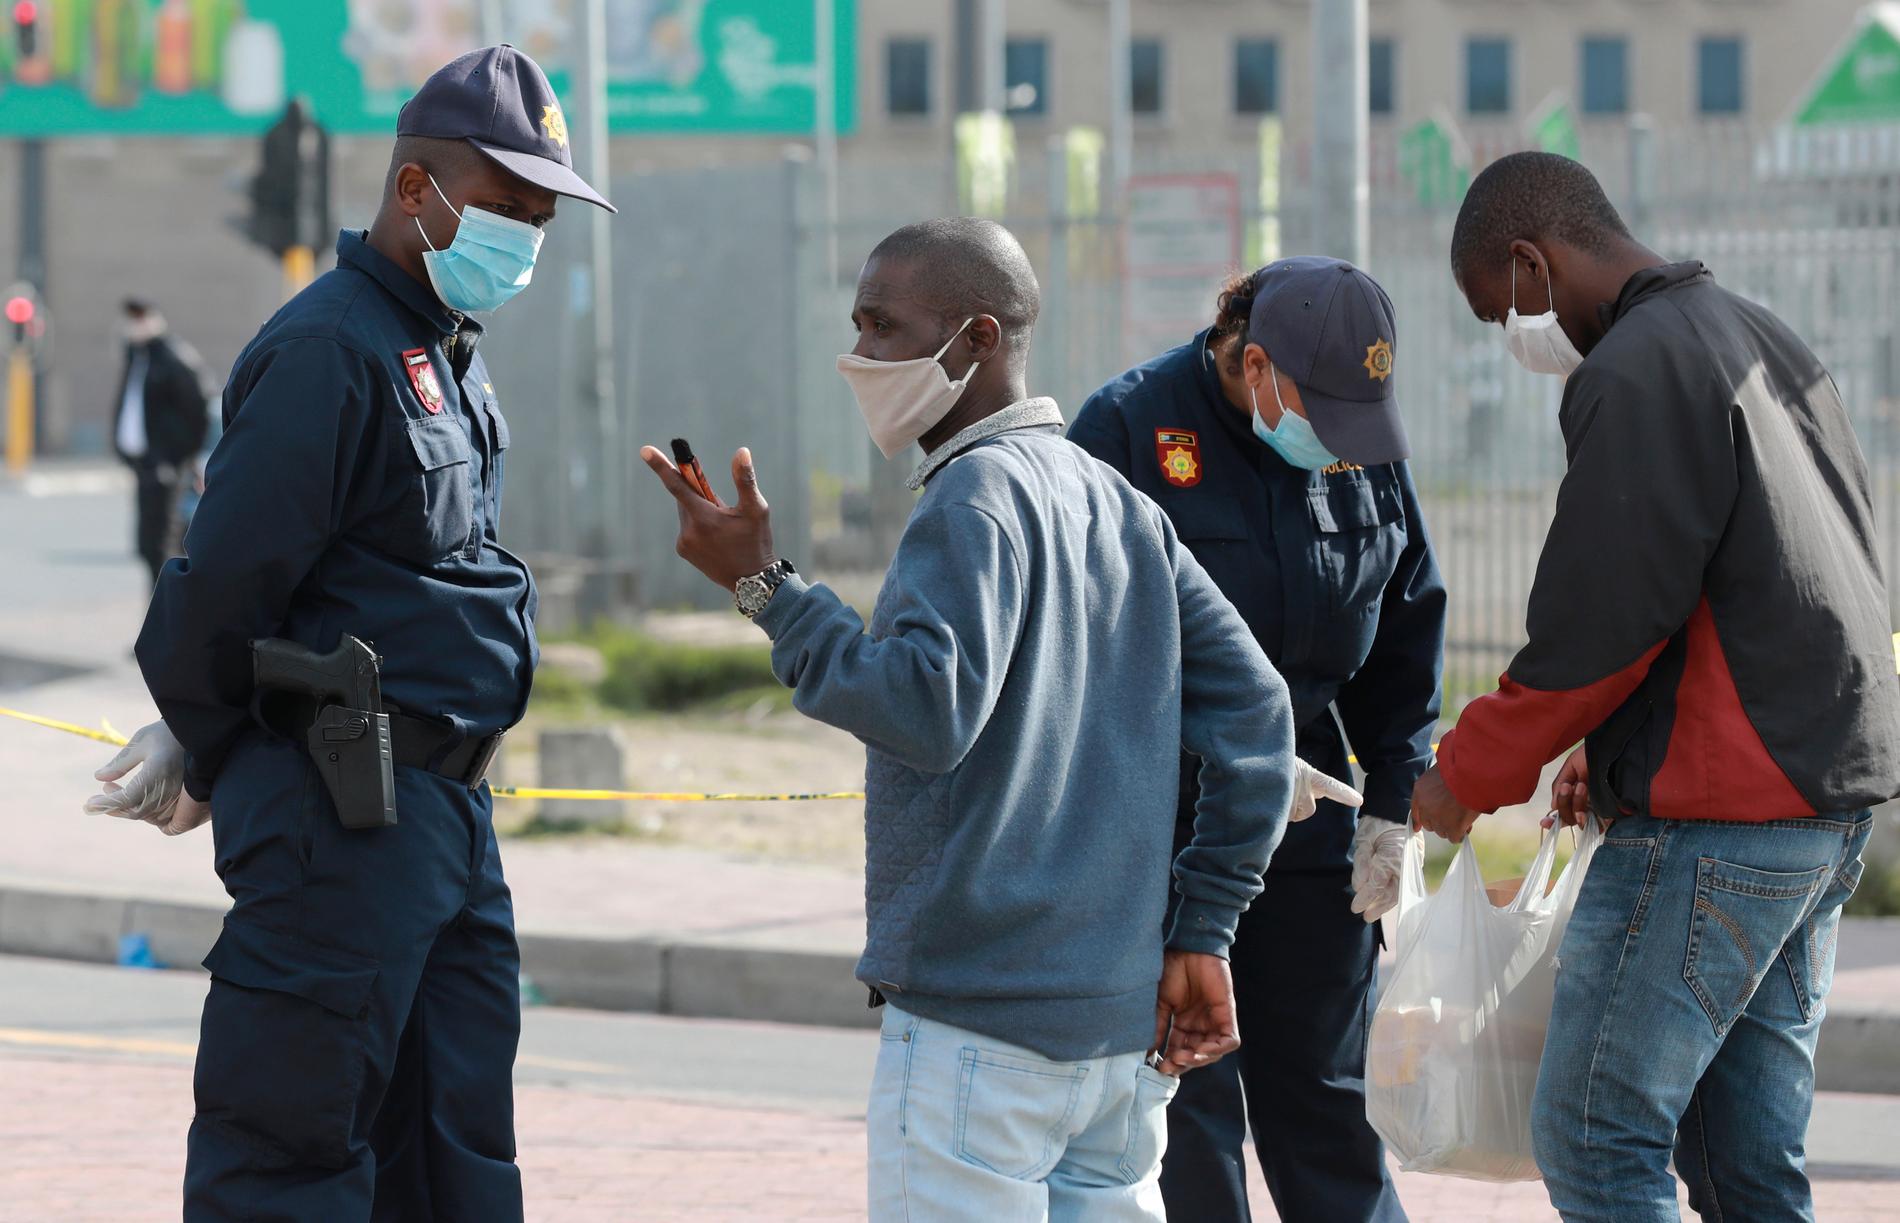 Sydafrikansk polis kontrollerar tillstånd vid en väntplats för taxibilar utanför Kapstaden.